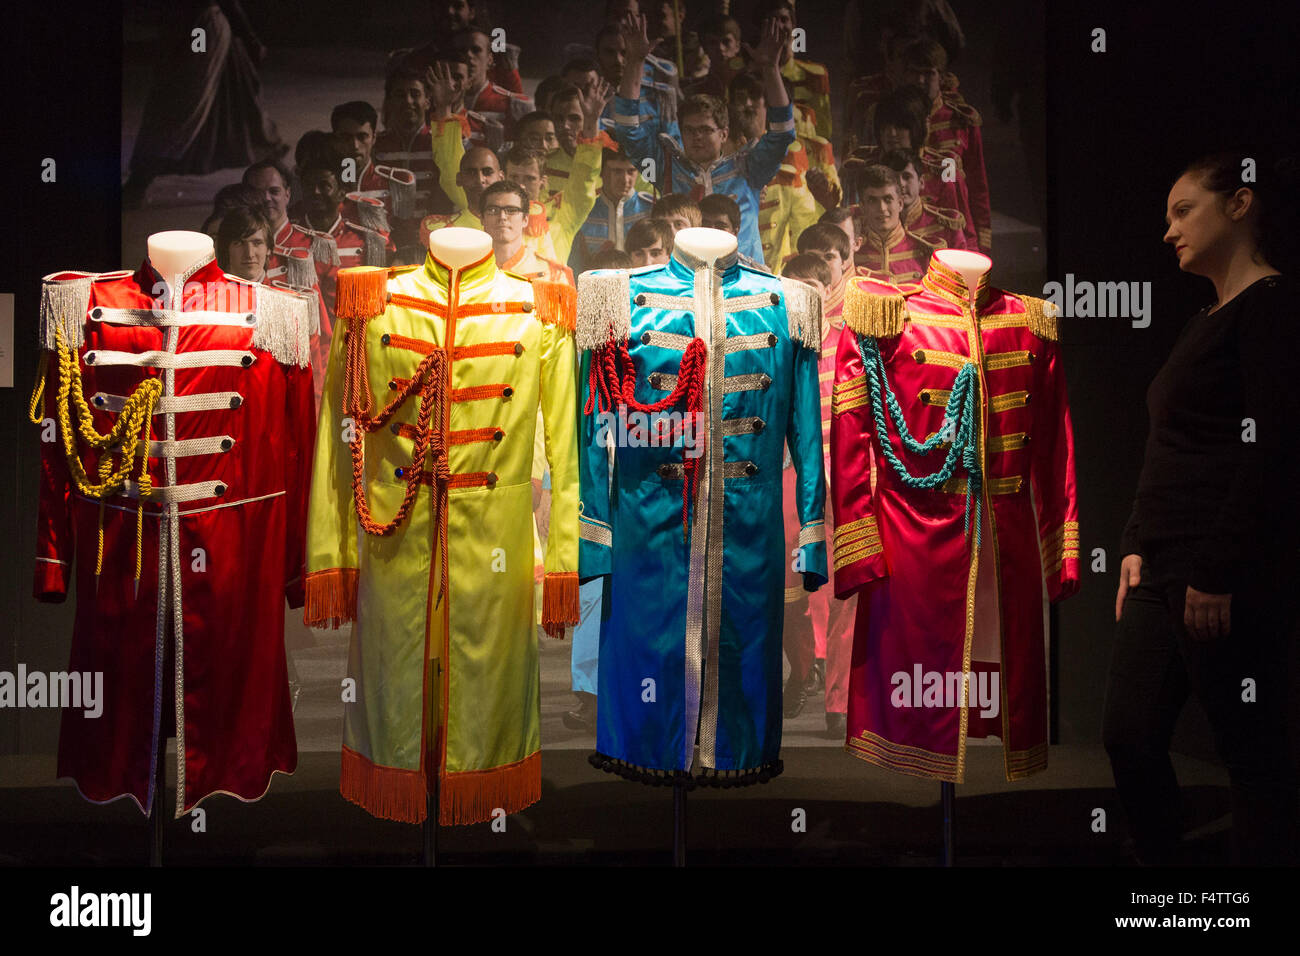 Londres, Reino Unido. 22/10/2015. En 1967 Ángeles creó el vestuario para la portada del álbum de Los Beatles Sgt Lonely Hearts Band, trajes mostrados aquí son de los Juegos